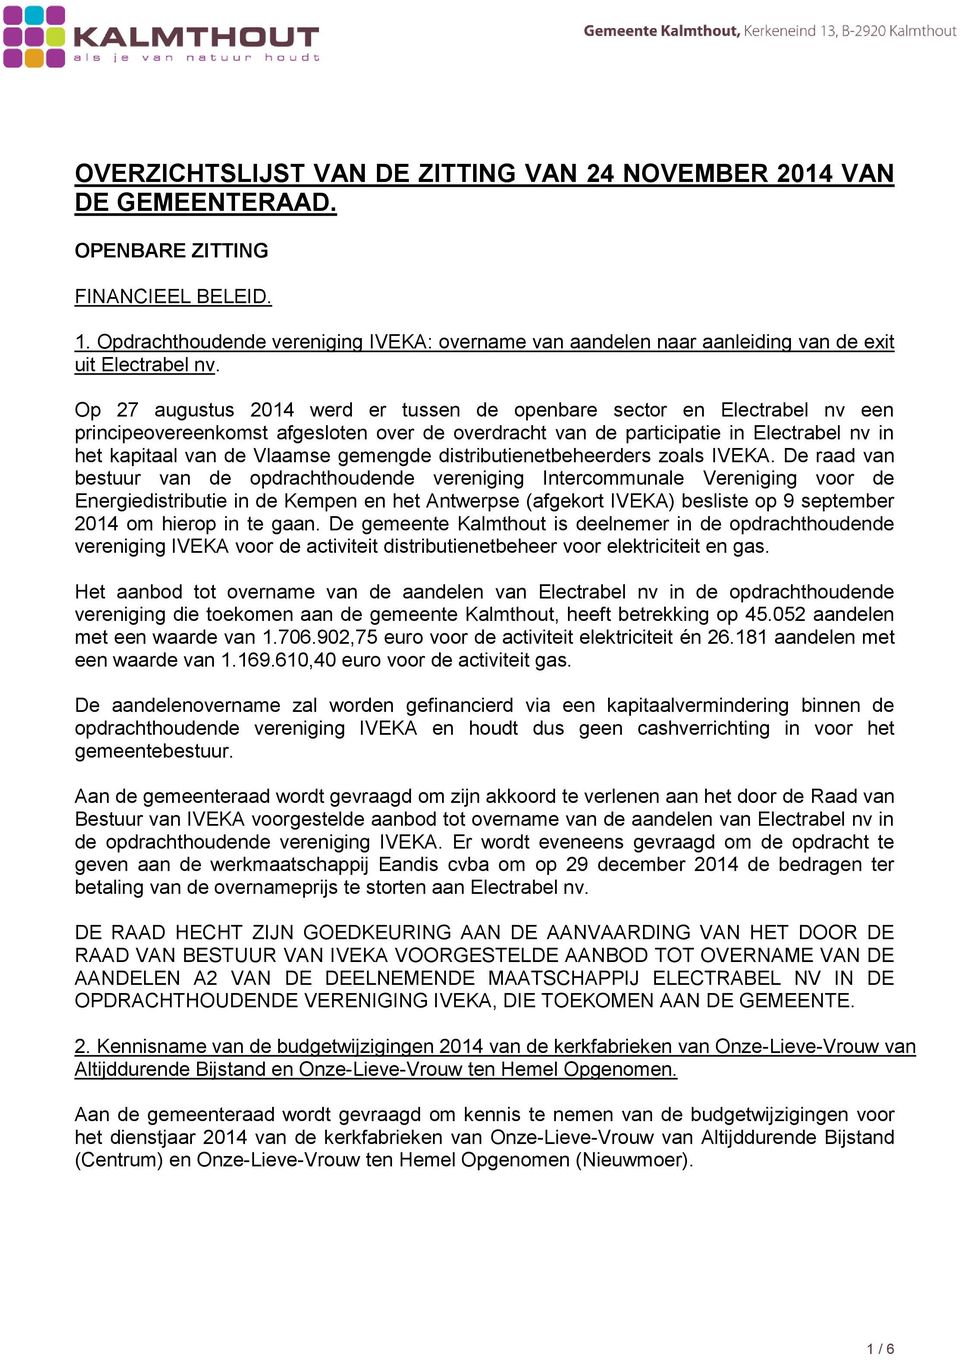 Op 27 augustus 2014 werd er tussen de openbare sector en Electrabel nv een principeovereenkomst afgesloten over de overdracht van de participatie in Electrabel nv in het kapitaal van de Vlaamse